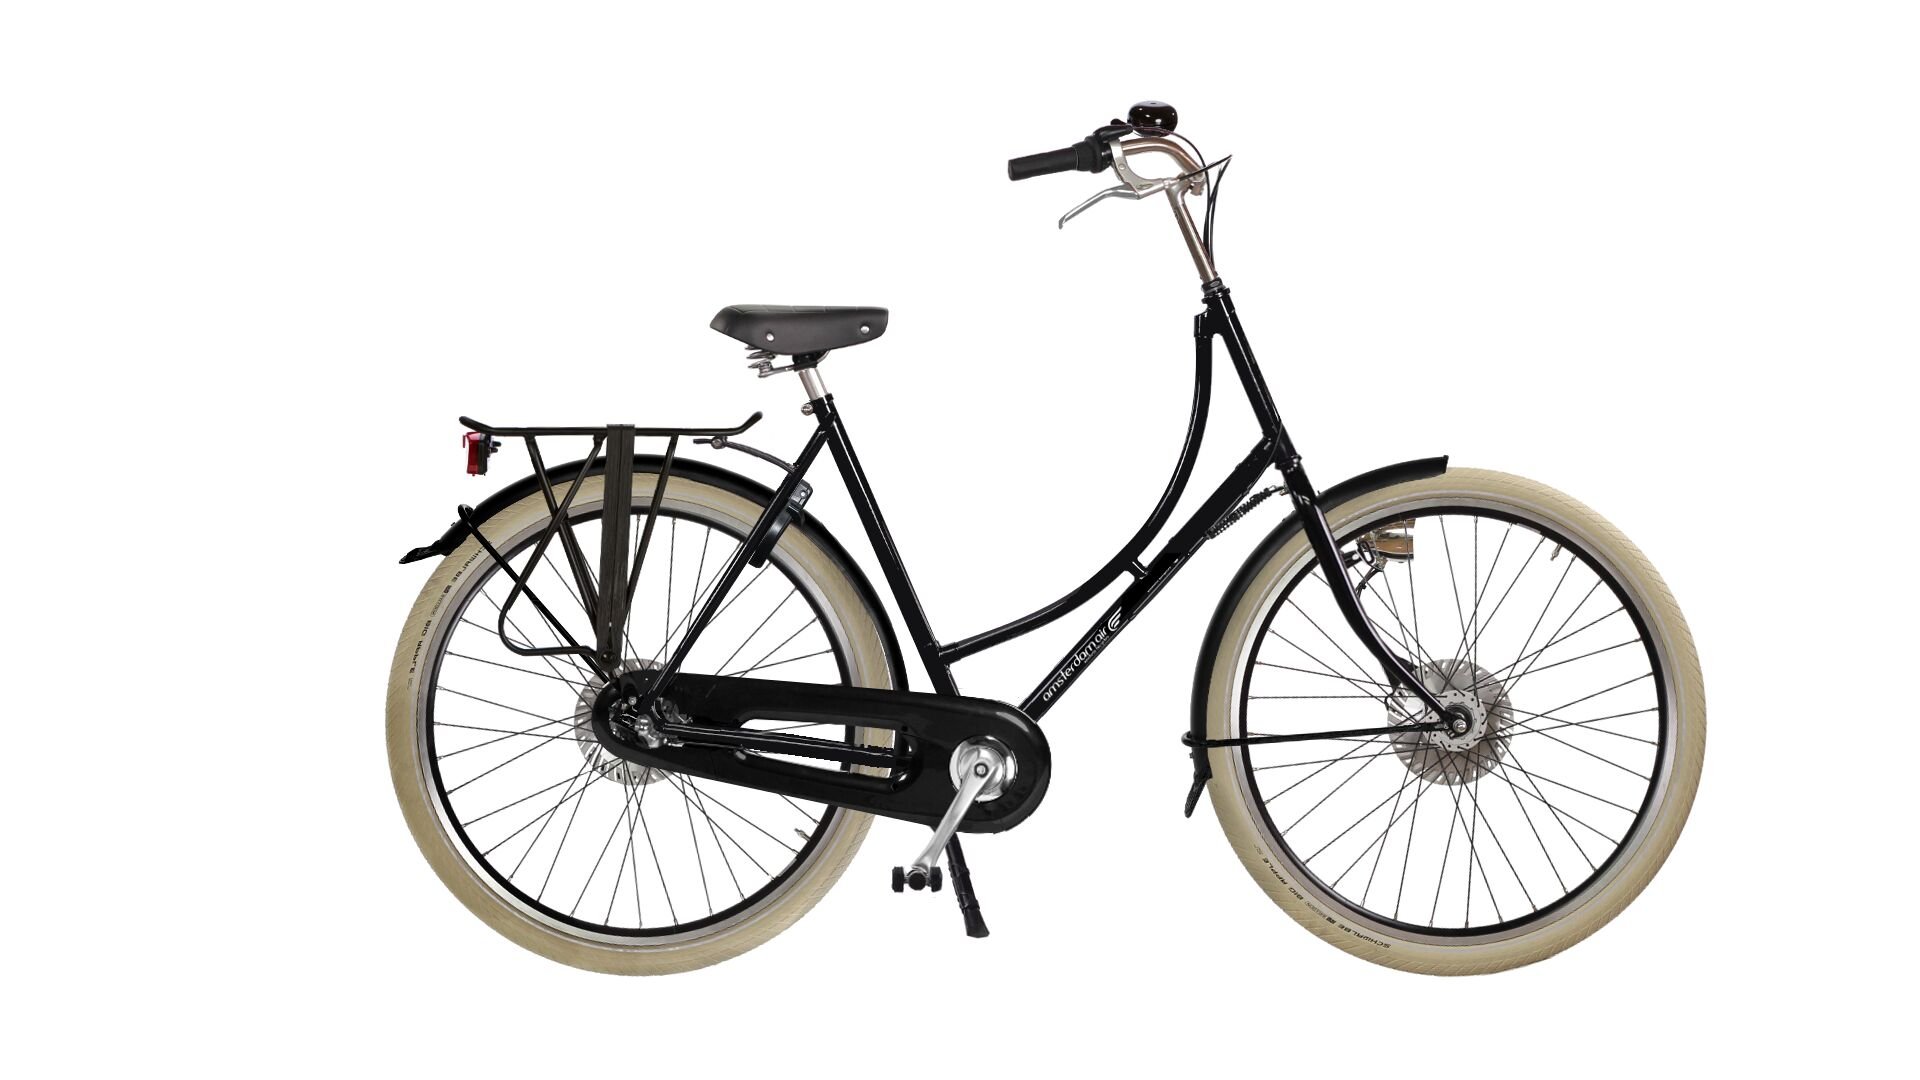 Configurateur du vélo hollandais Oma Premium